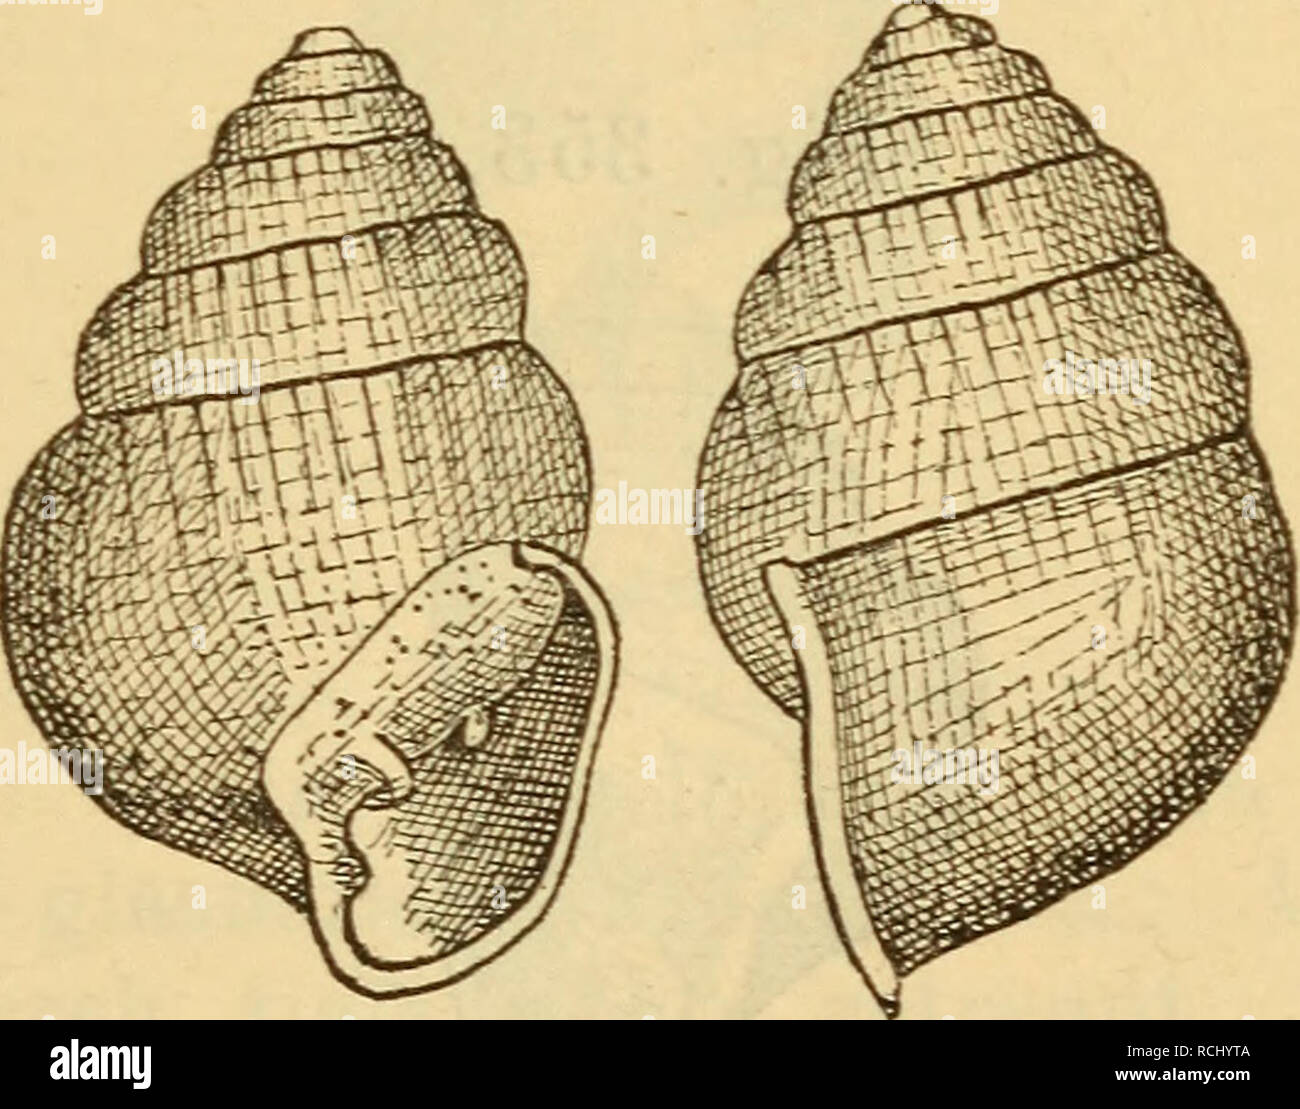 . Die Mollusken-Fauna Mitteleuropa's. Mollusks. 515 Gehäuse: sehwach geritzt, ei-kegelförroig, dünnschalig, glatt, durchscheinend, glasfärben; Gewinde kegelförmig; Wirbel stumpf; Umgänge 5—6, massig gewölbt, durch tiefe Nähte getrennt, der letzte gegen die Naht etwas aufge- blasen, erreicht die Hälfte der ganzen Gehäuselänge; Mün- dung mondförmig, schief, an der Basis etwas erweitert: Spindel kurz, mit einem sehr deutlichen Zahn besetzt; auf der Mündungswand 2 Zähne, der eine stärkere nahe der Spindel gelegen, der andere sehr schwache in der Mitte der Wand; Mundsaum verstärkt, zurückgeschlagen Stock Photo